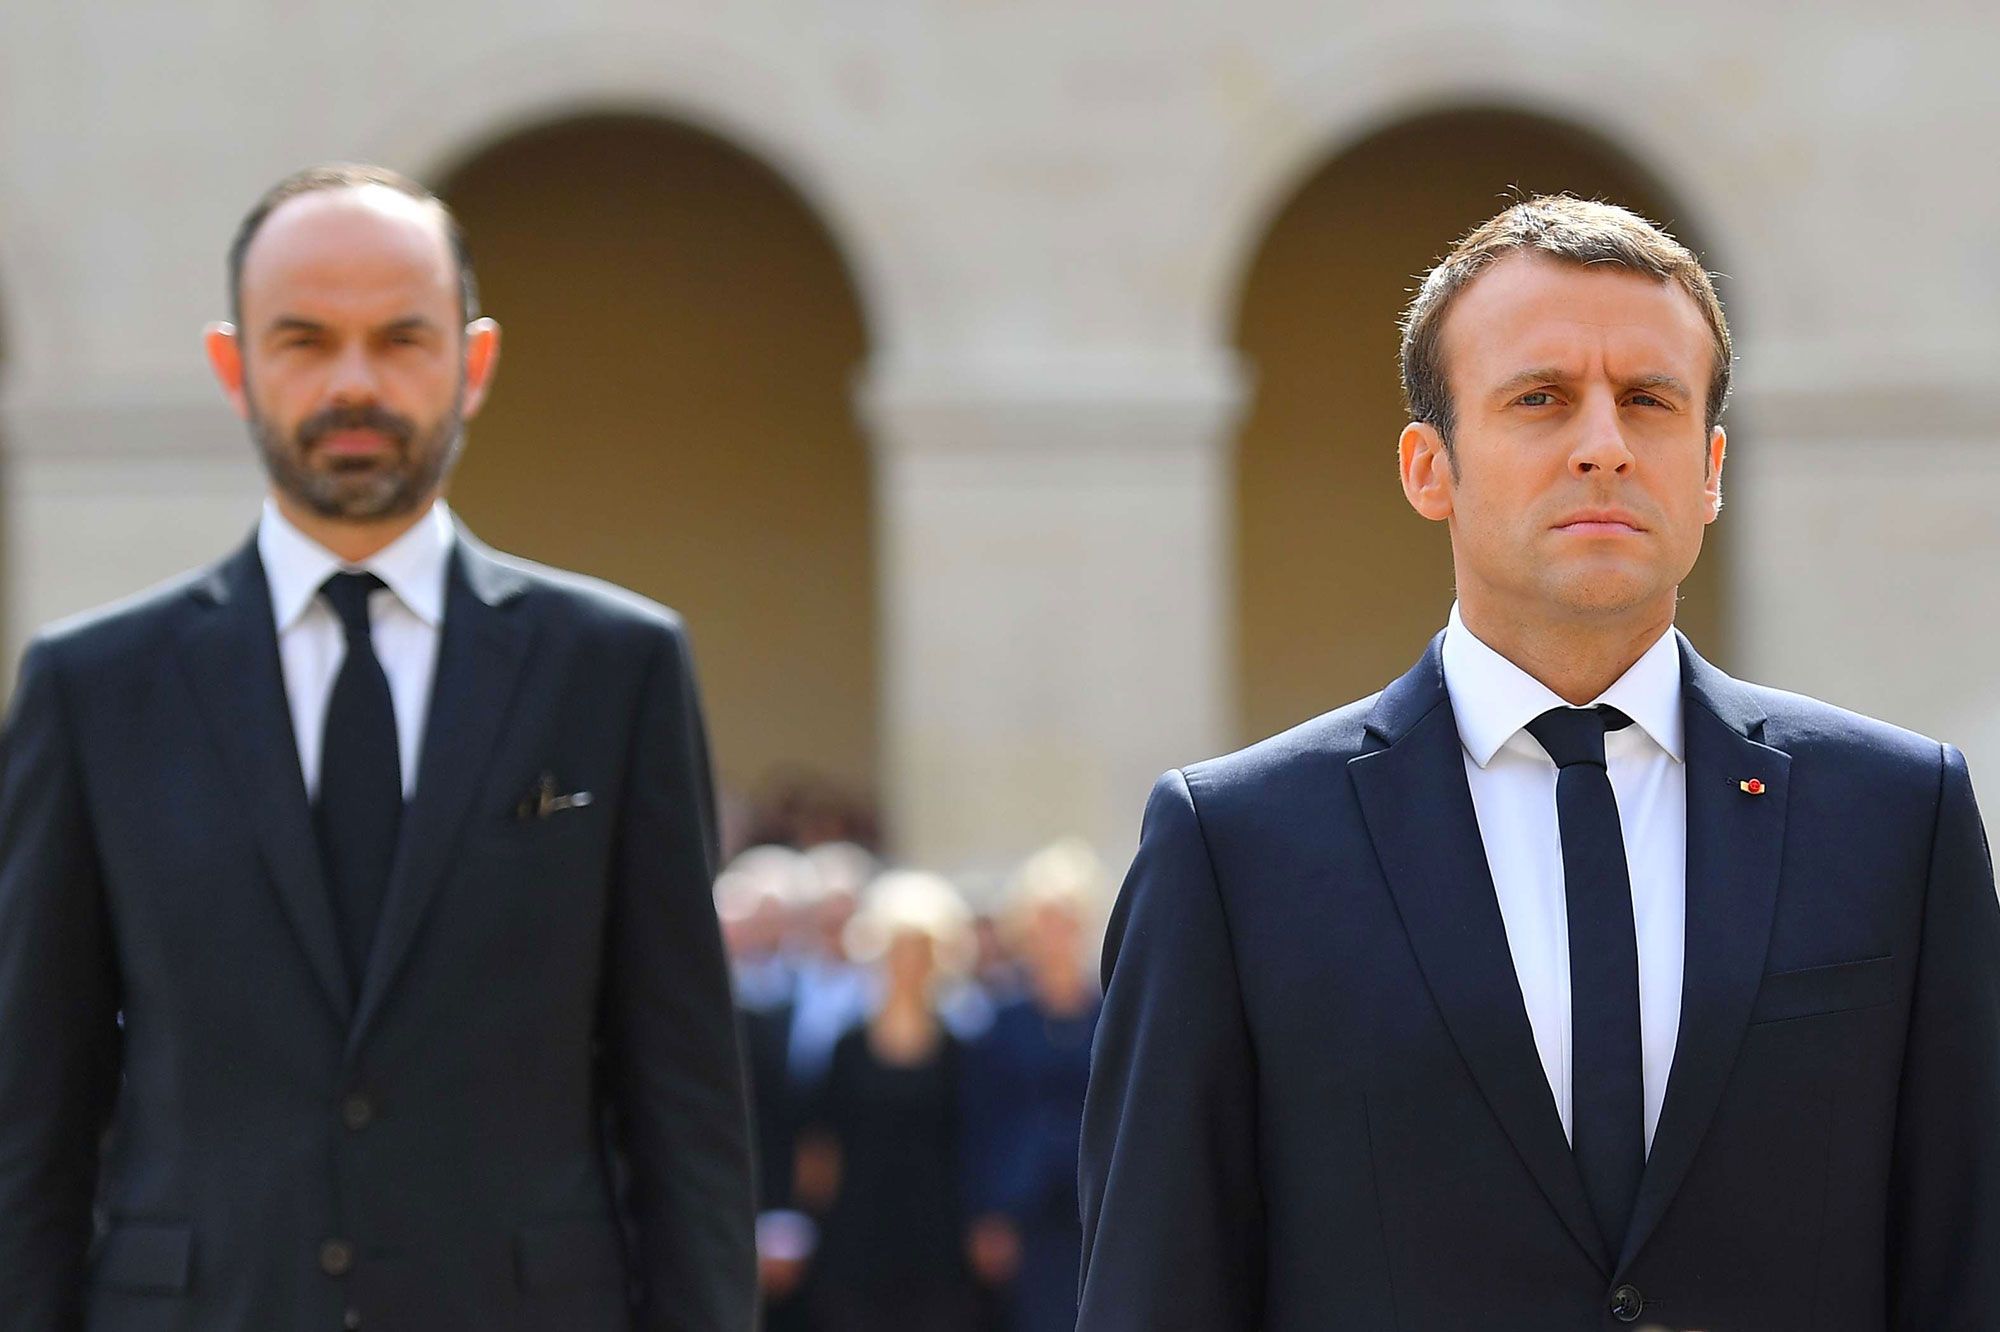 Tensions entre Emmanuel Macron et Edouard Philippe : Cette pique qui fait jaser